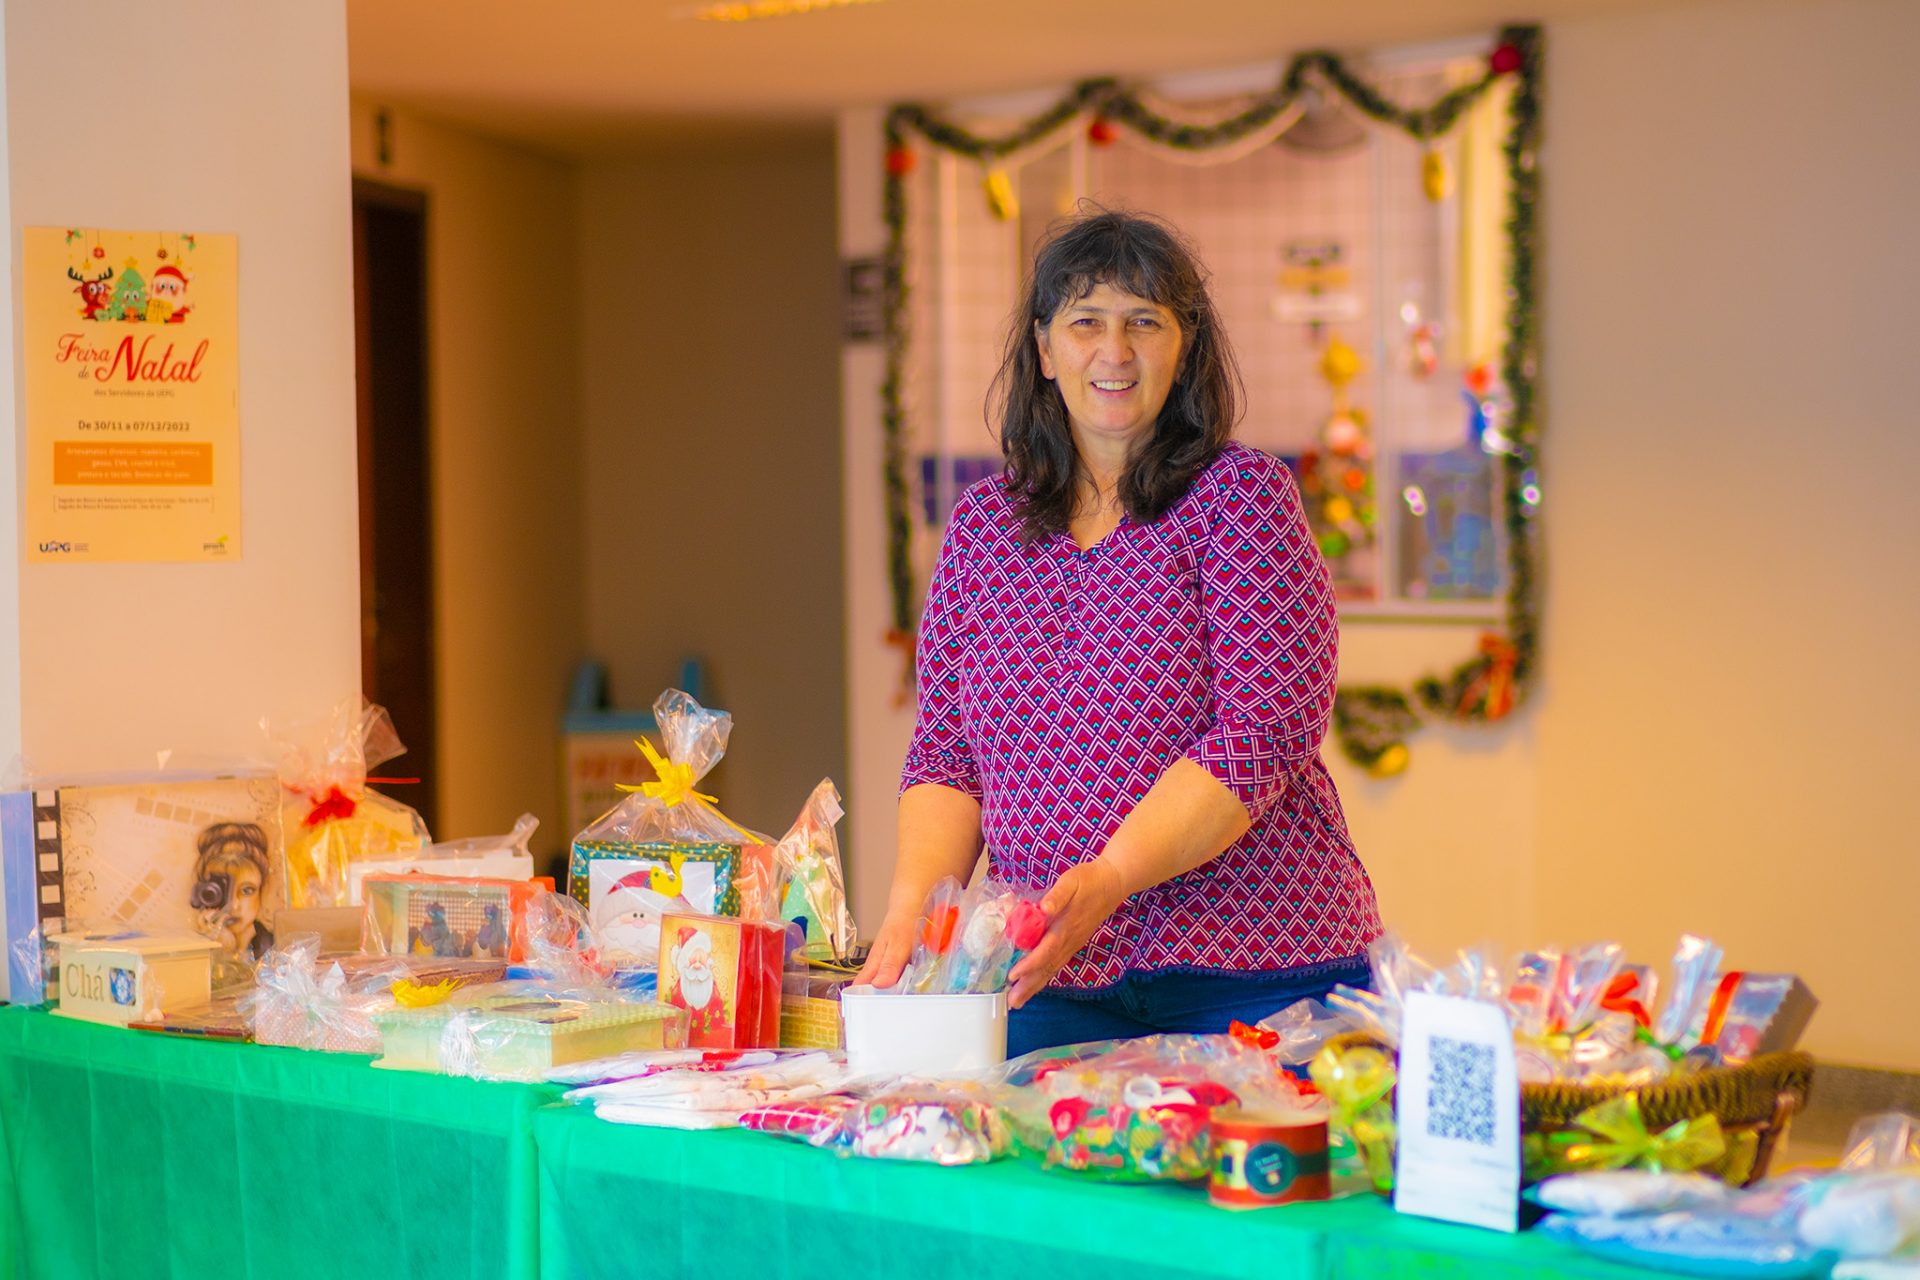 Servidores da UEPG vendem produtos artesanais em Feira de Natal